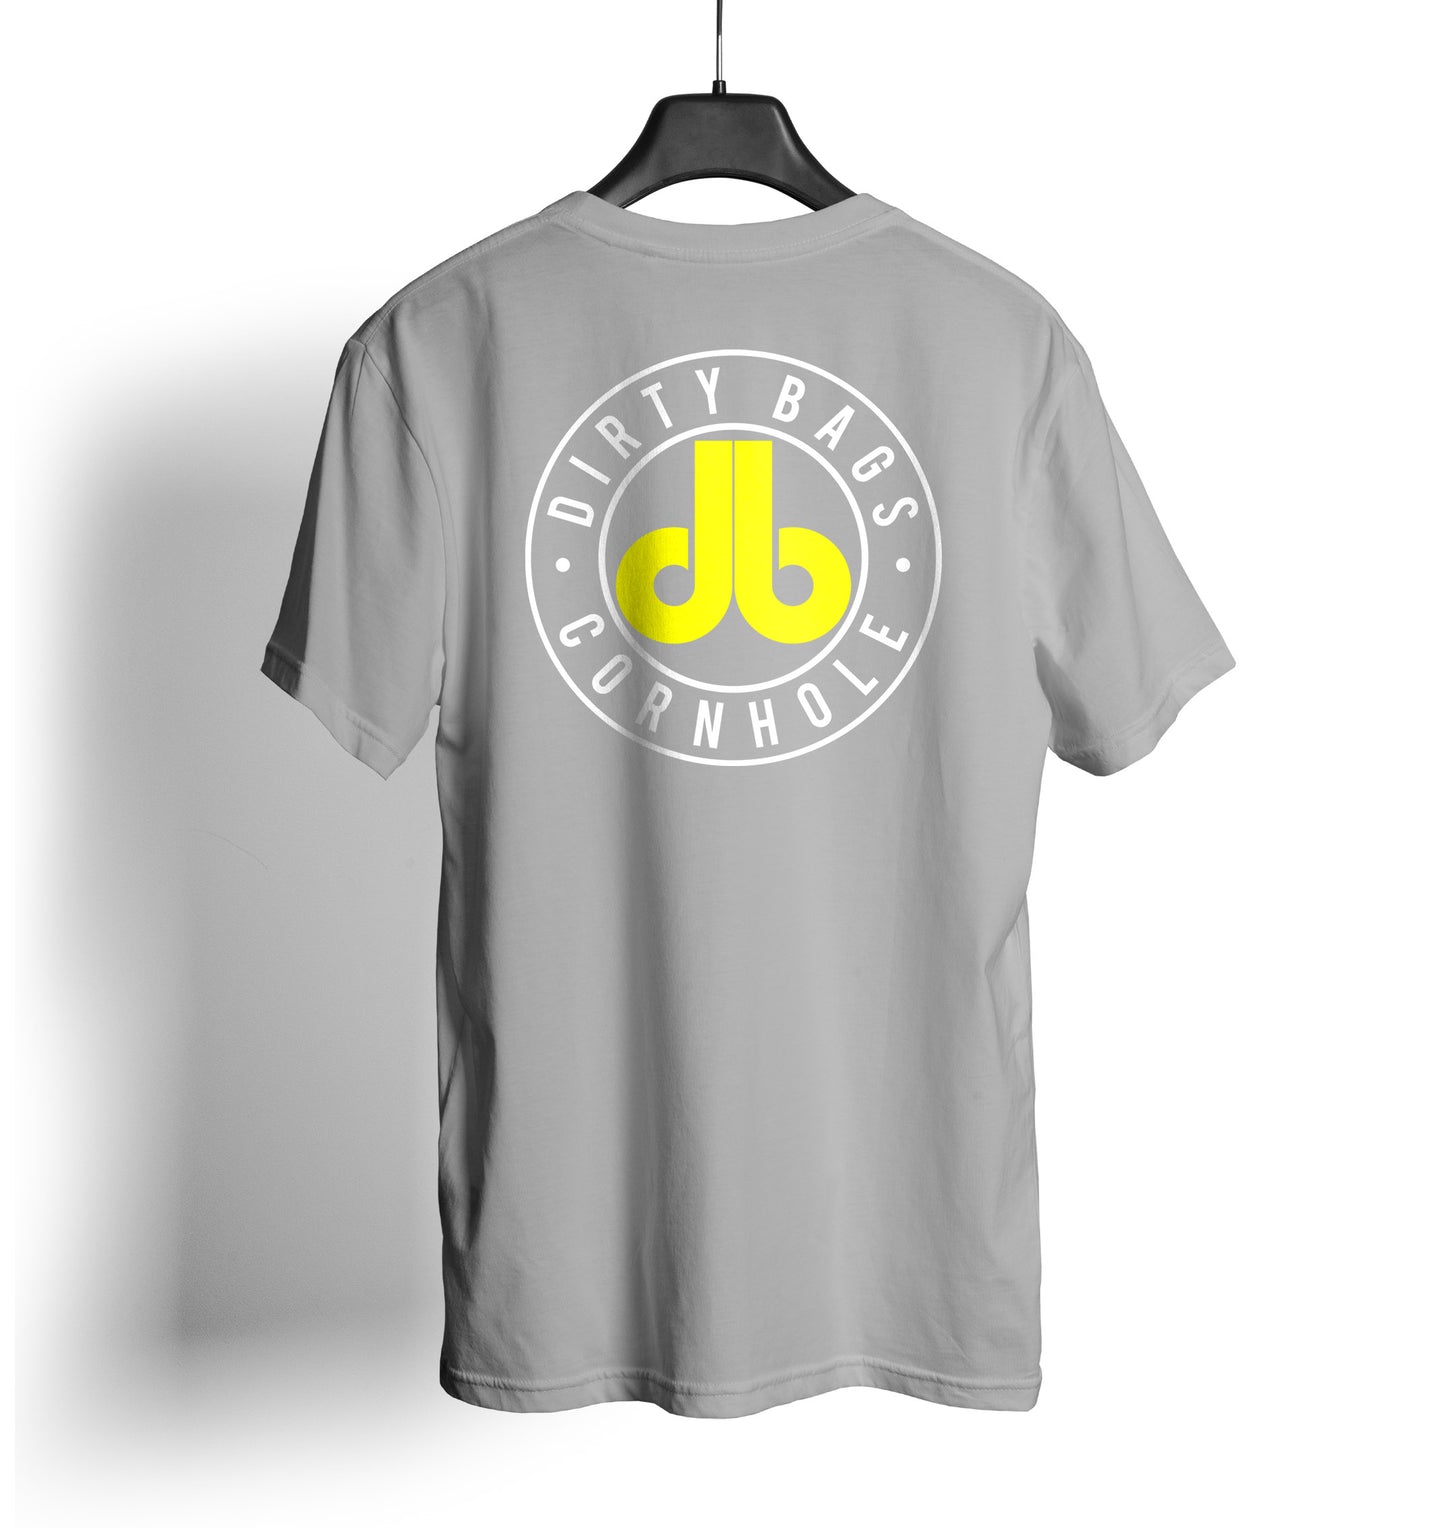 db Cornhole T Shirt - Gray and Yellow